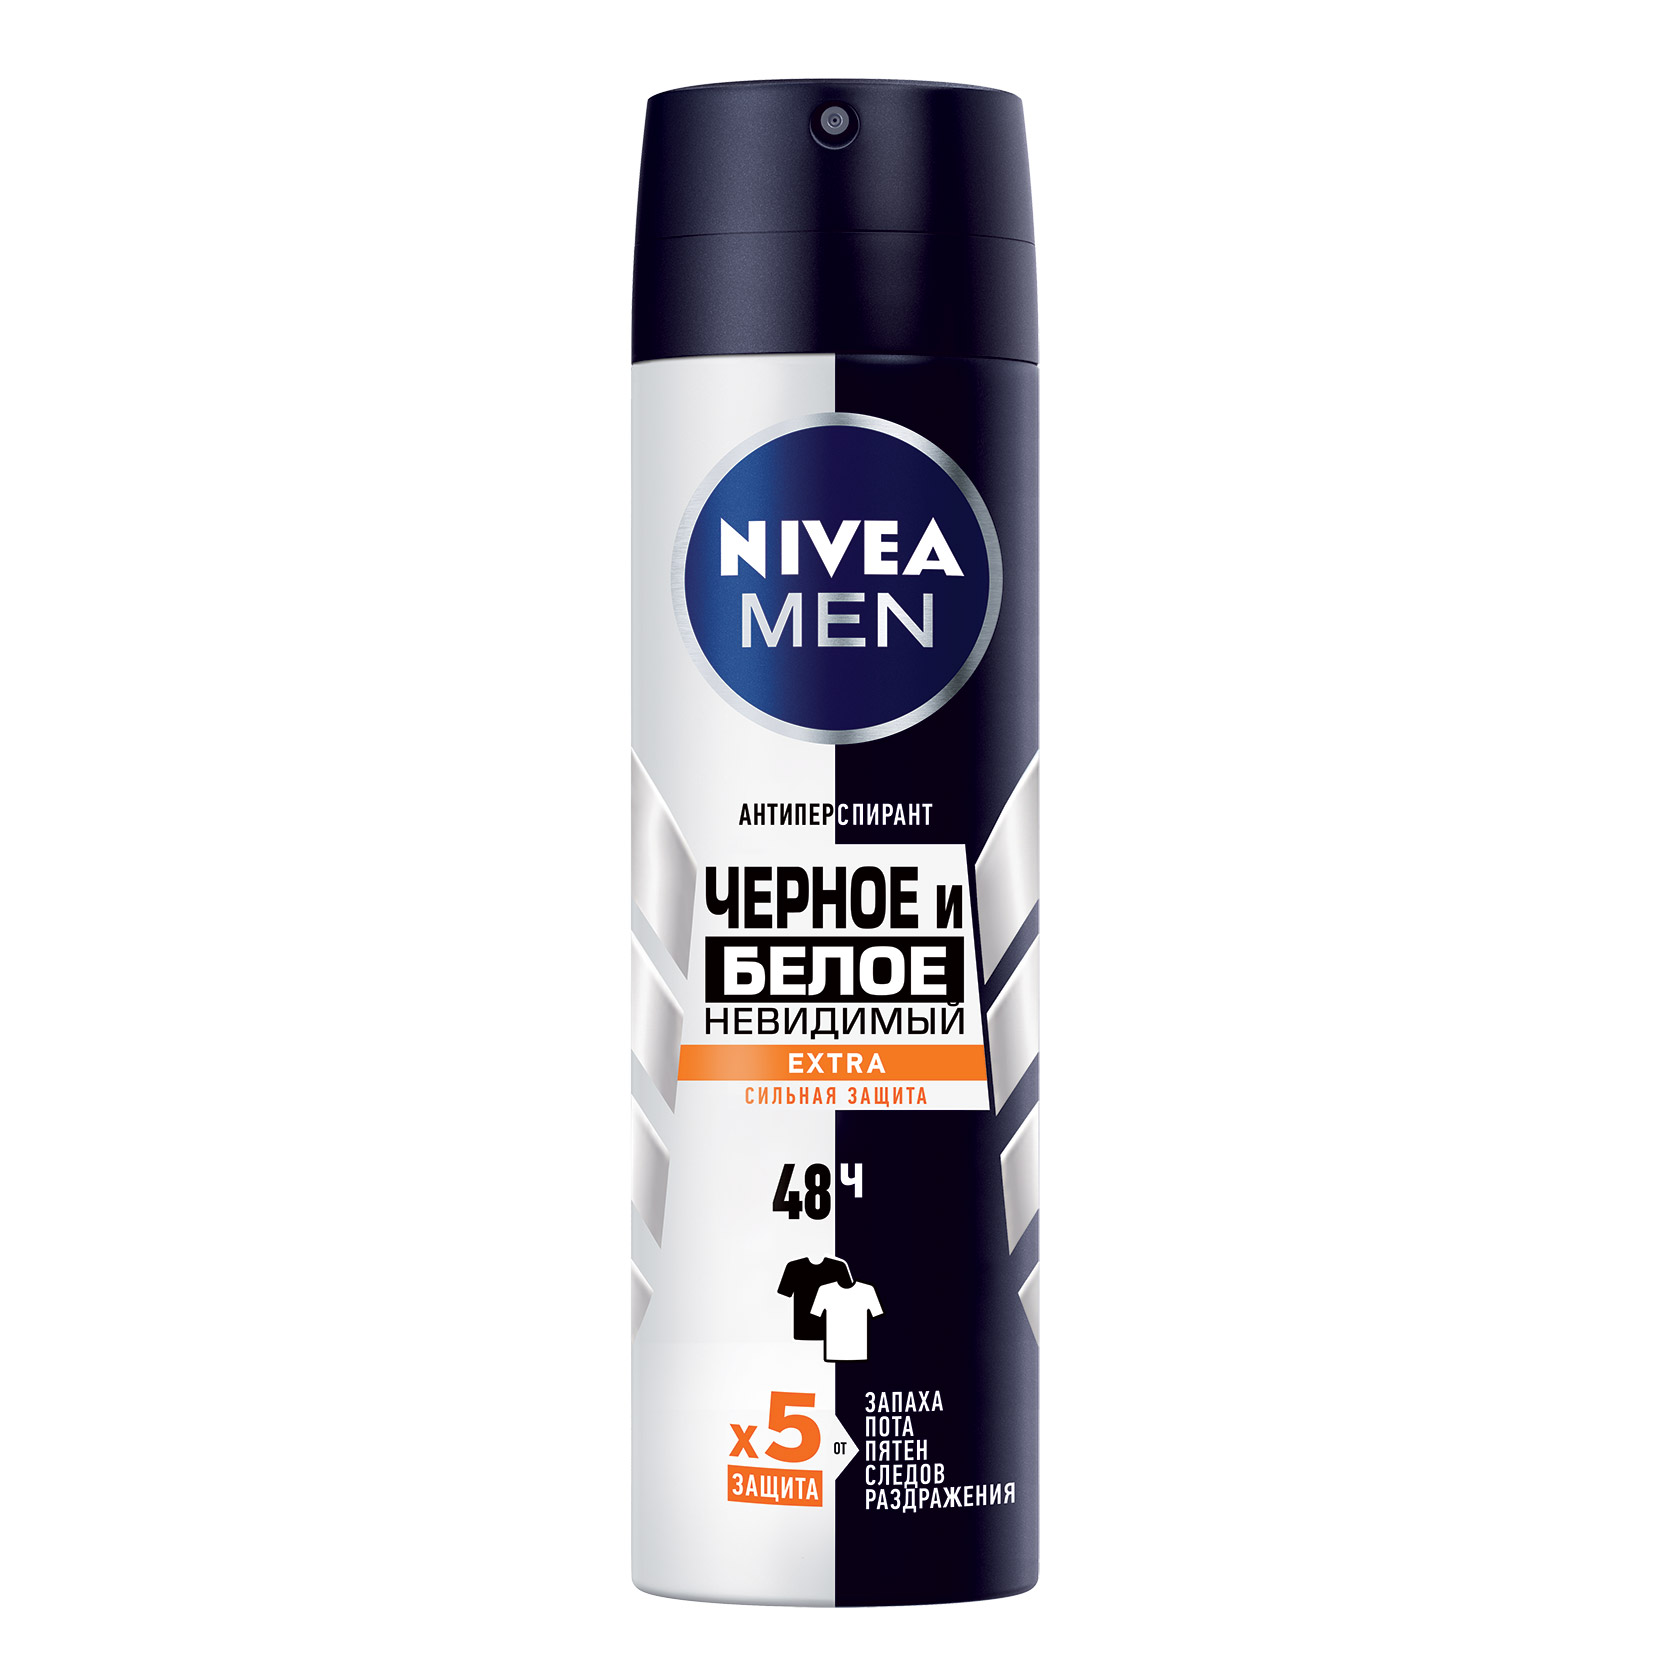 Дезодорант-спрей для мужчин Nivea Черное и белое Невидимый Extra 150 мл дезодорант антиперспирант спрей эффеки пудры 150 мл nivea